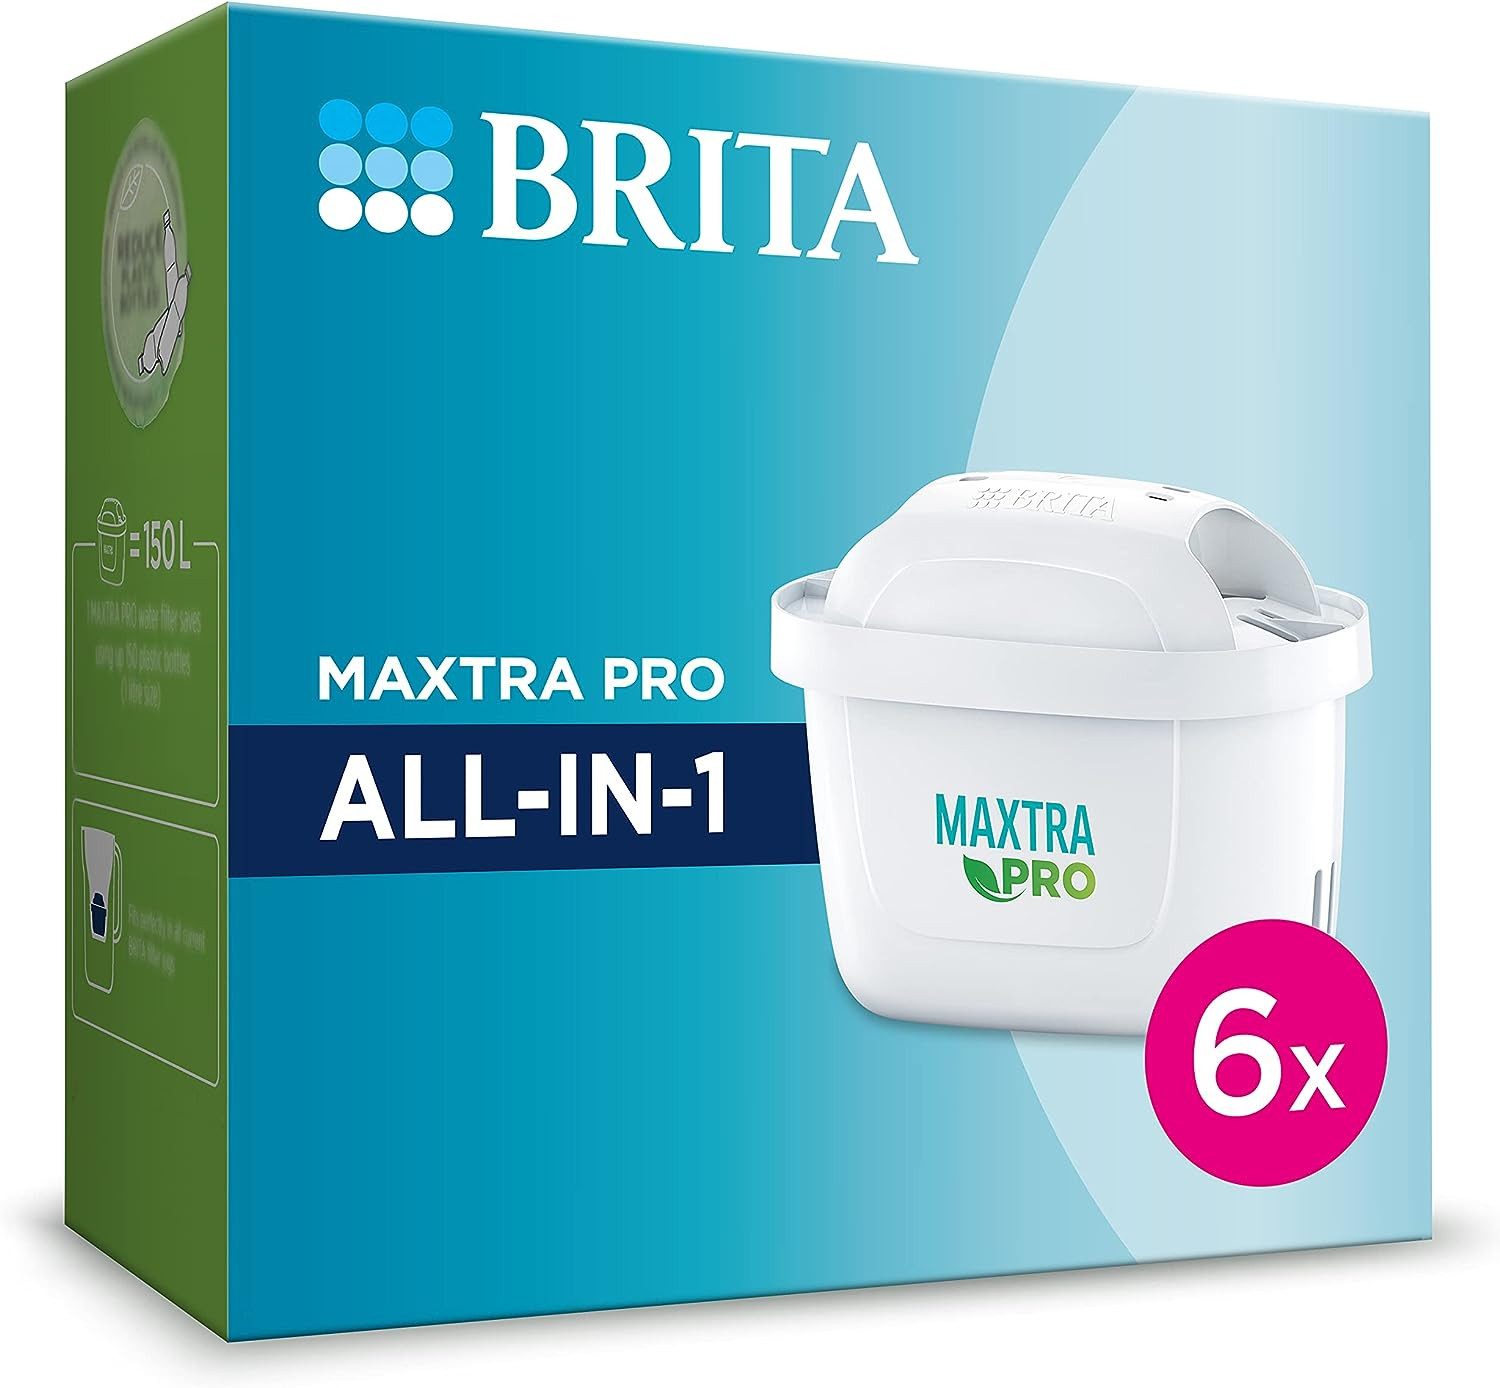 BRITA Wasserfilter Maxtra Pro all in 1 5+1, Zubehör für alle Brita Produkte (außer Classic)